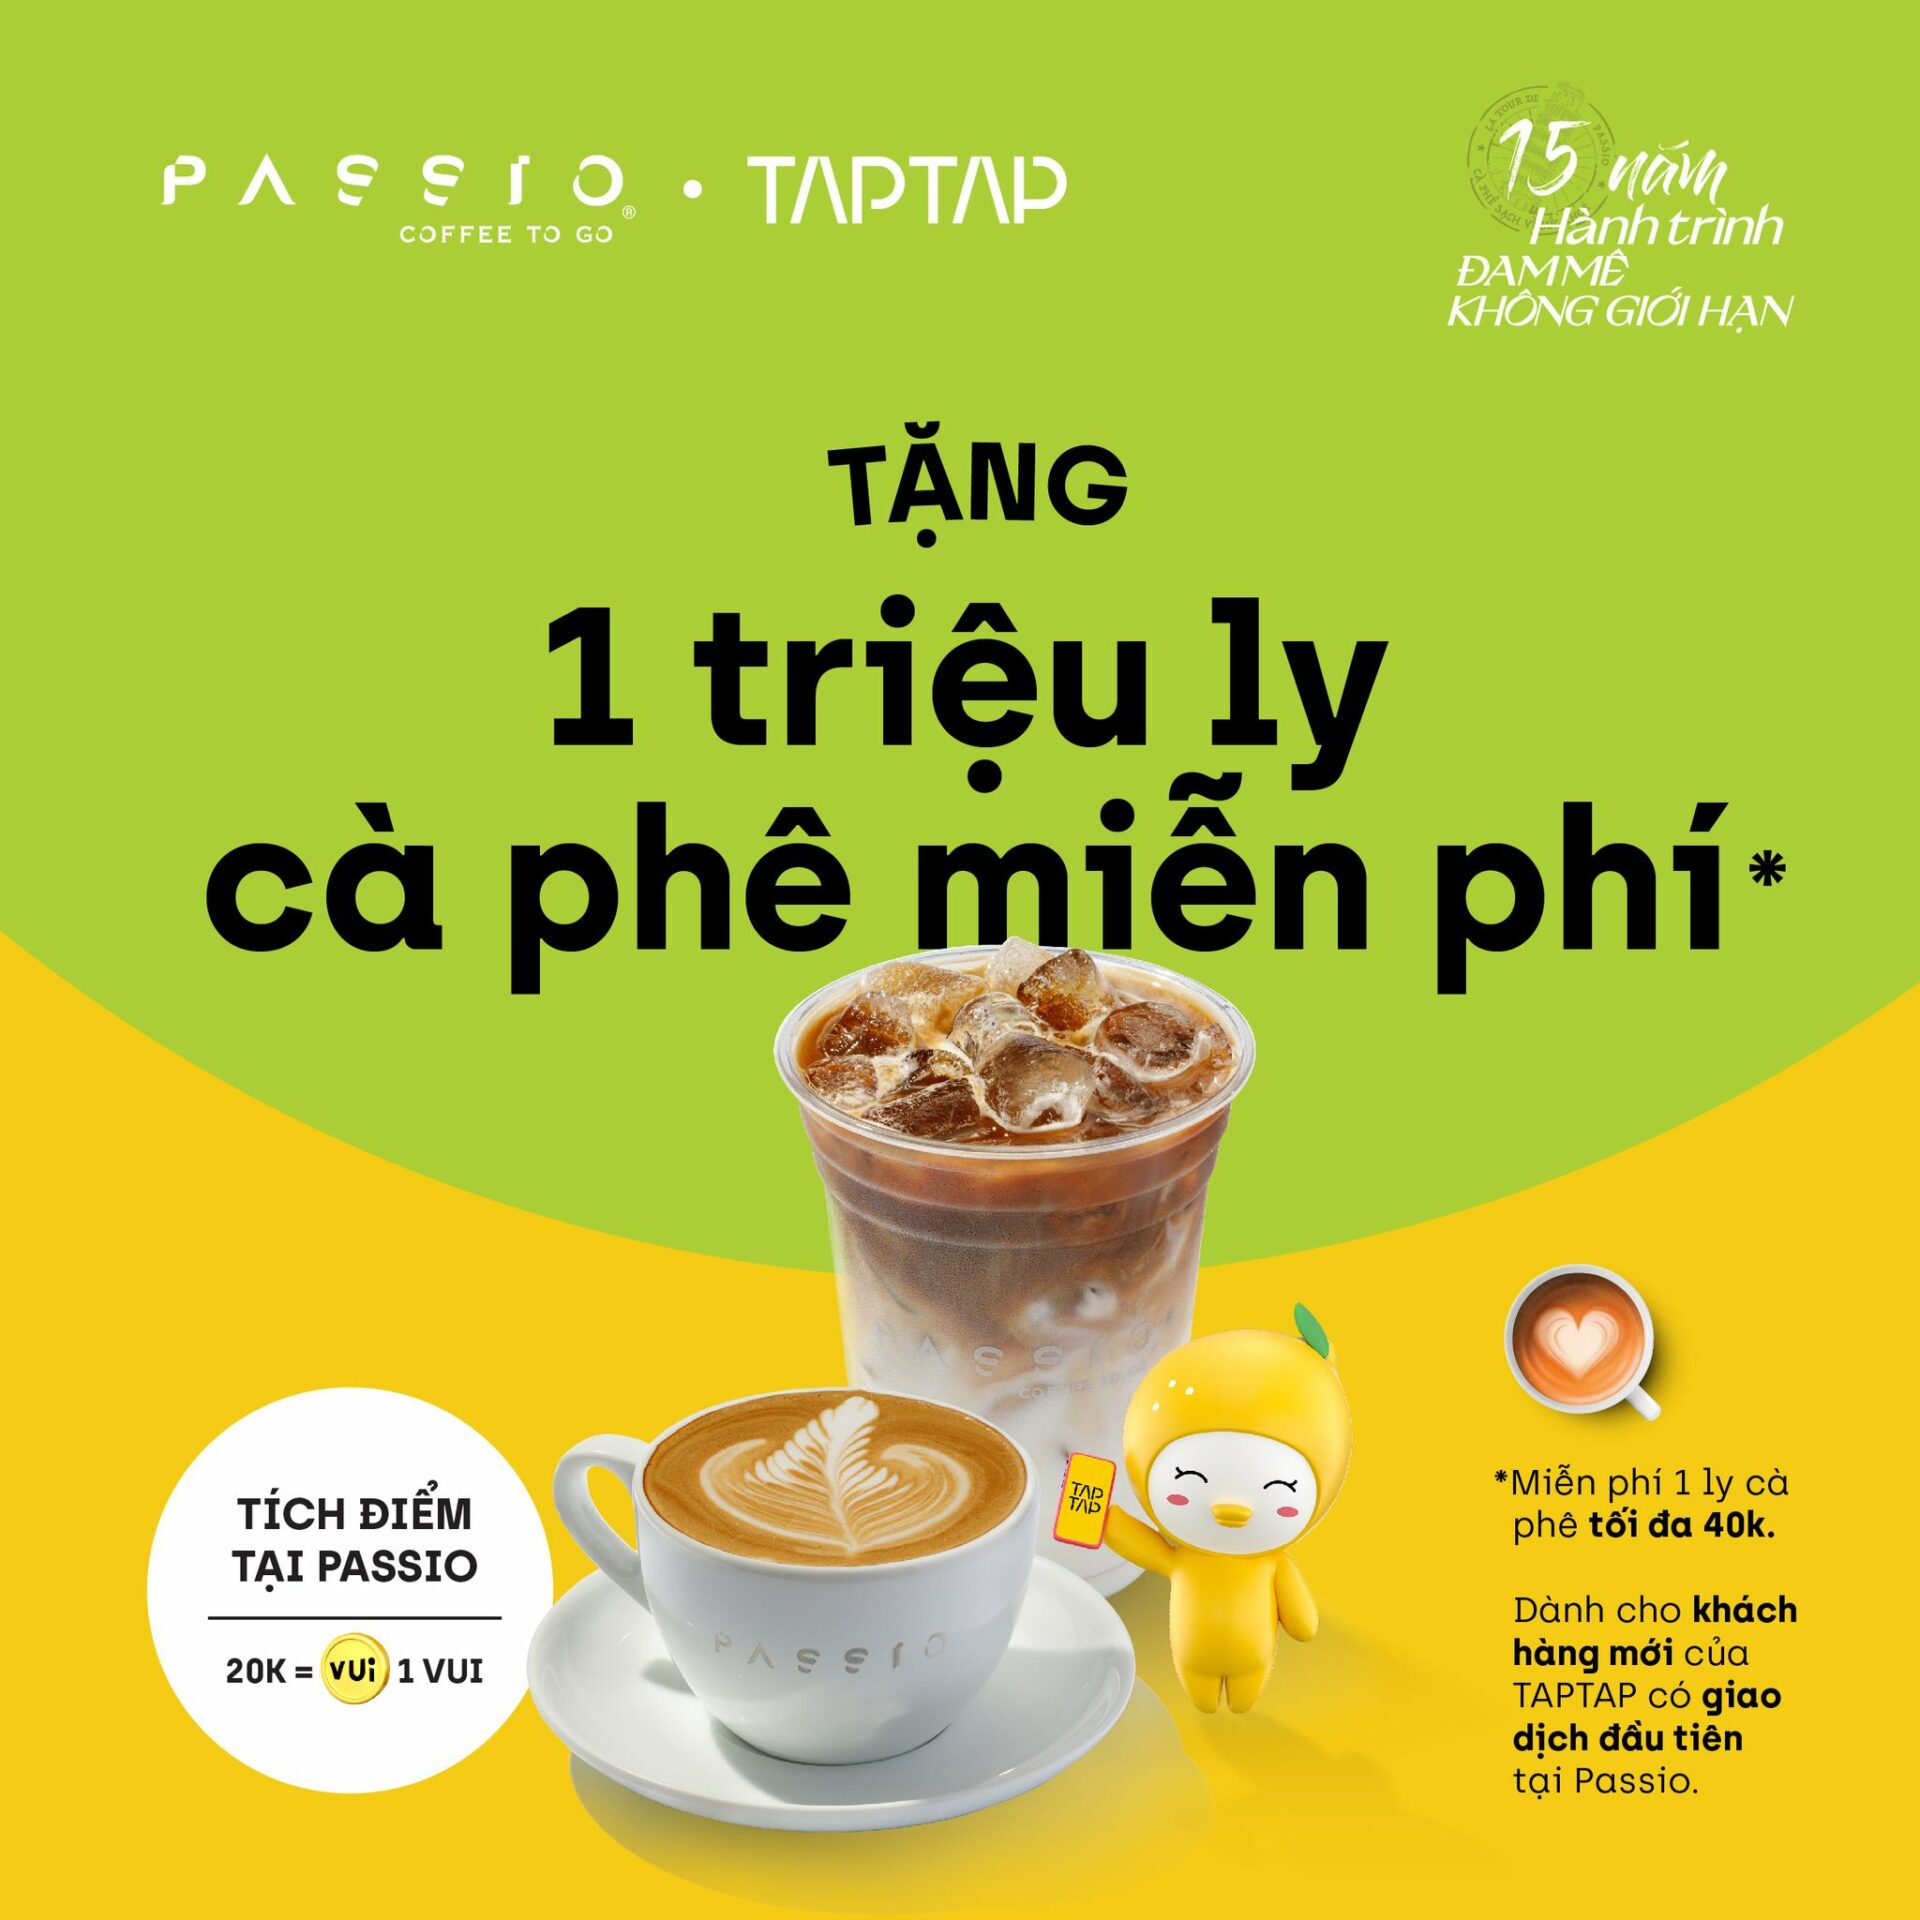 Hình ảnh chương trình TAPTAP Vietnam cùng Passio tặng 1 triệu ly cà phê miễn phí